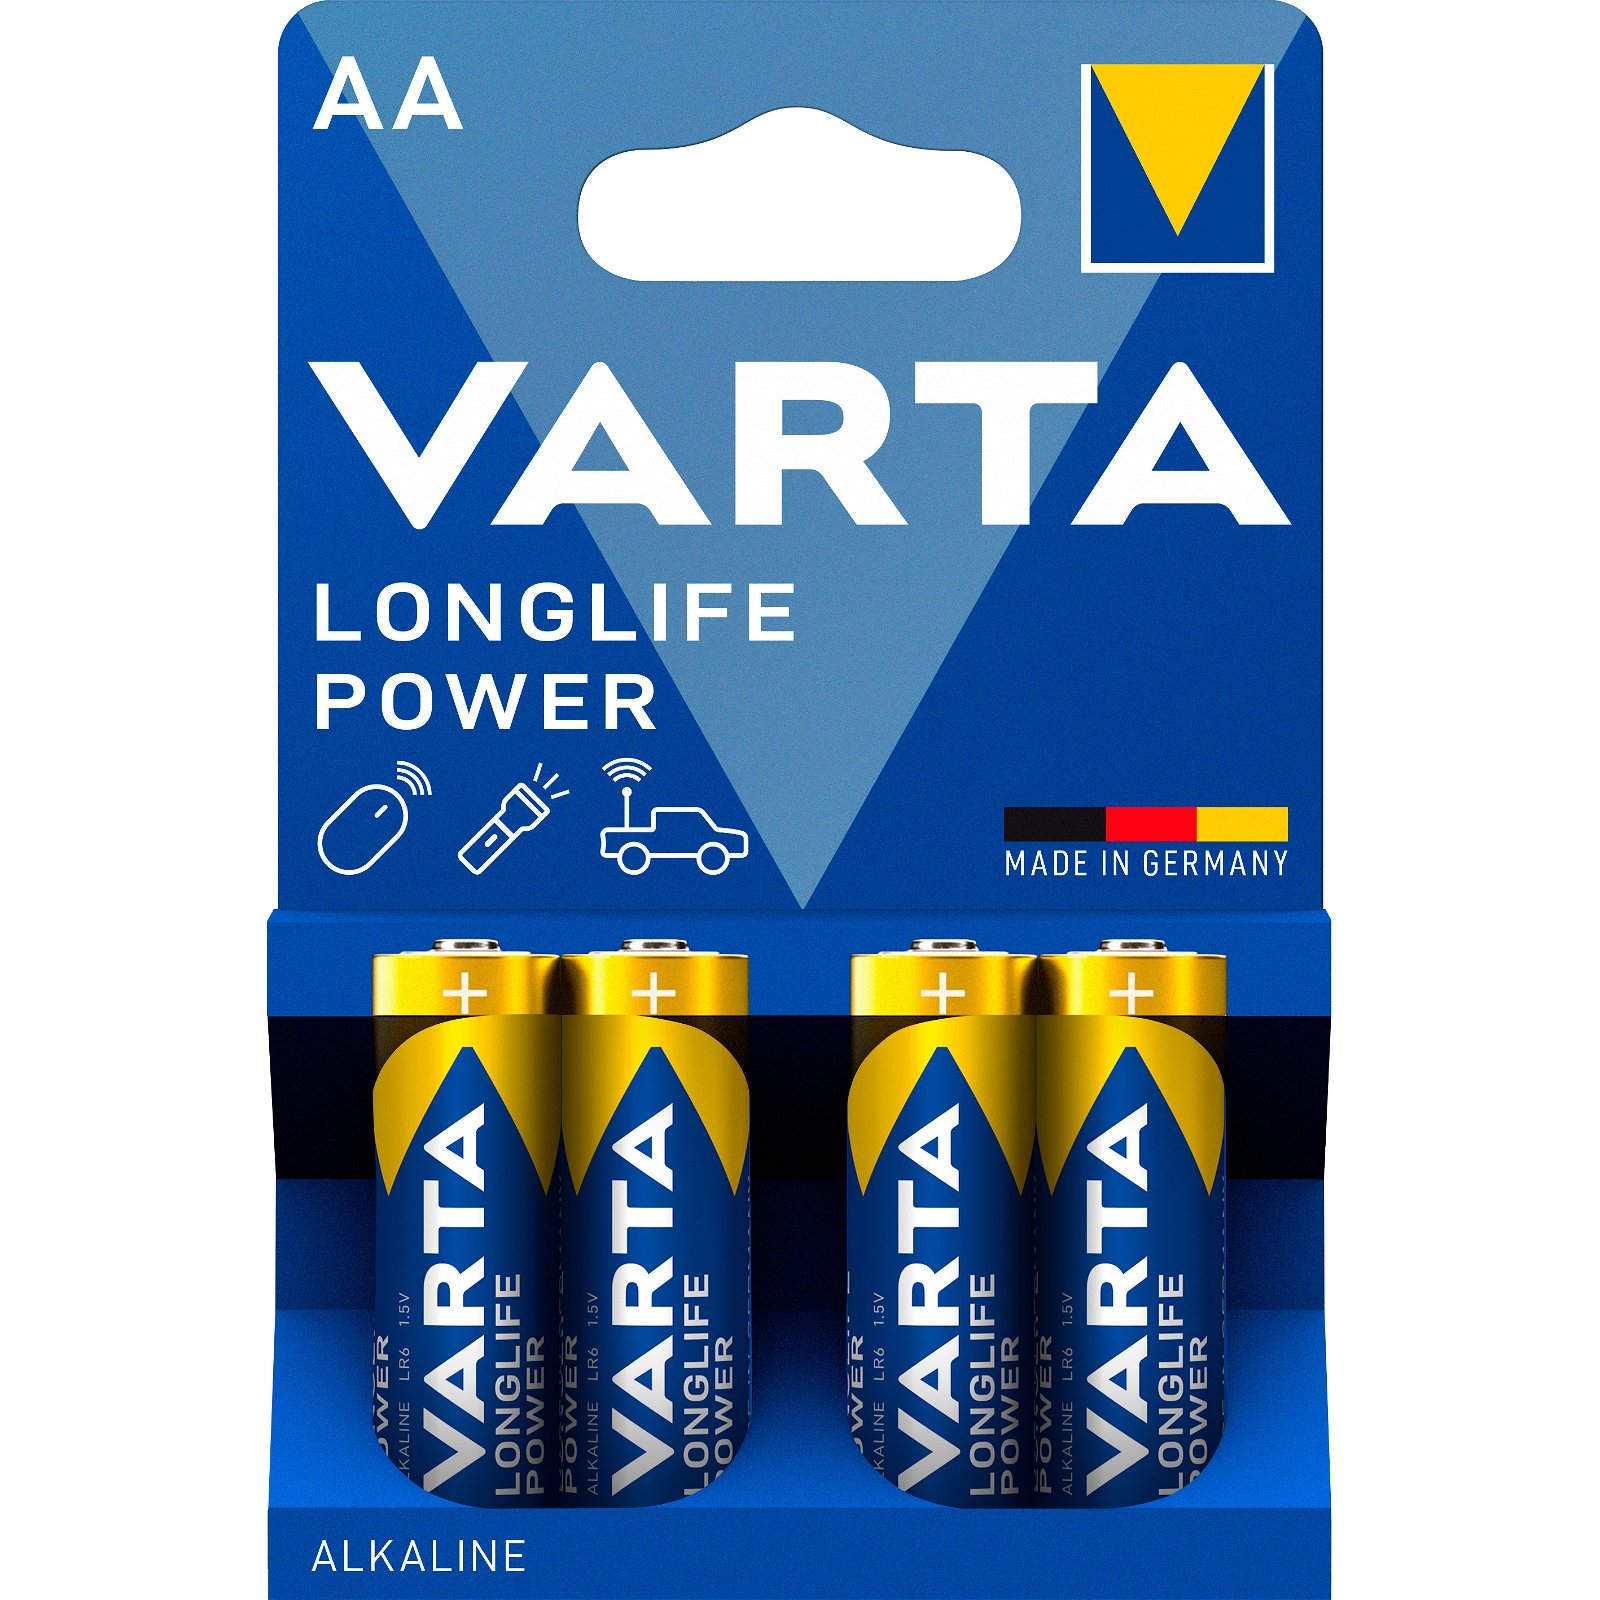 VARTA LongLife Power batteri AA/LR6 1.5 v 4 stk